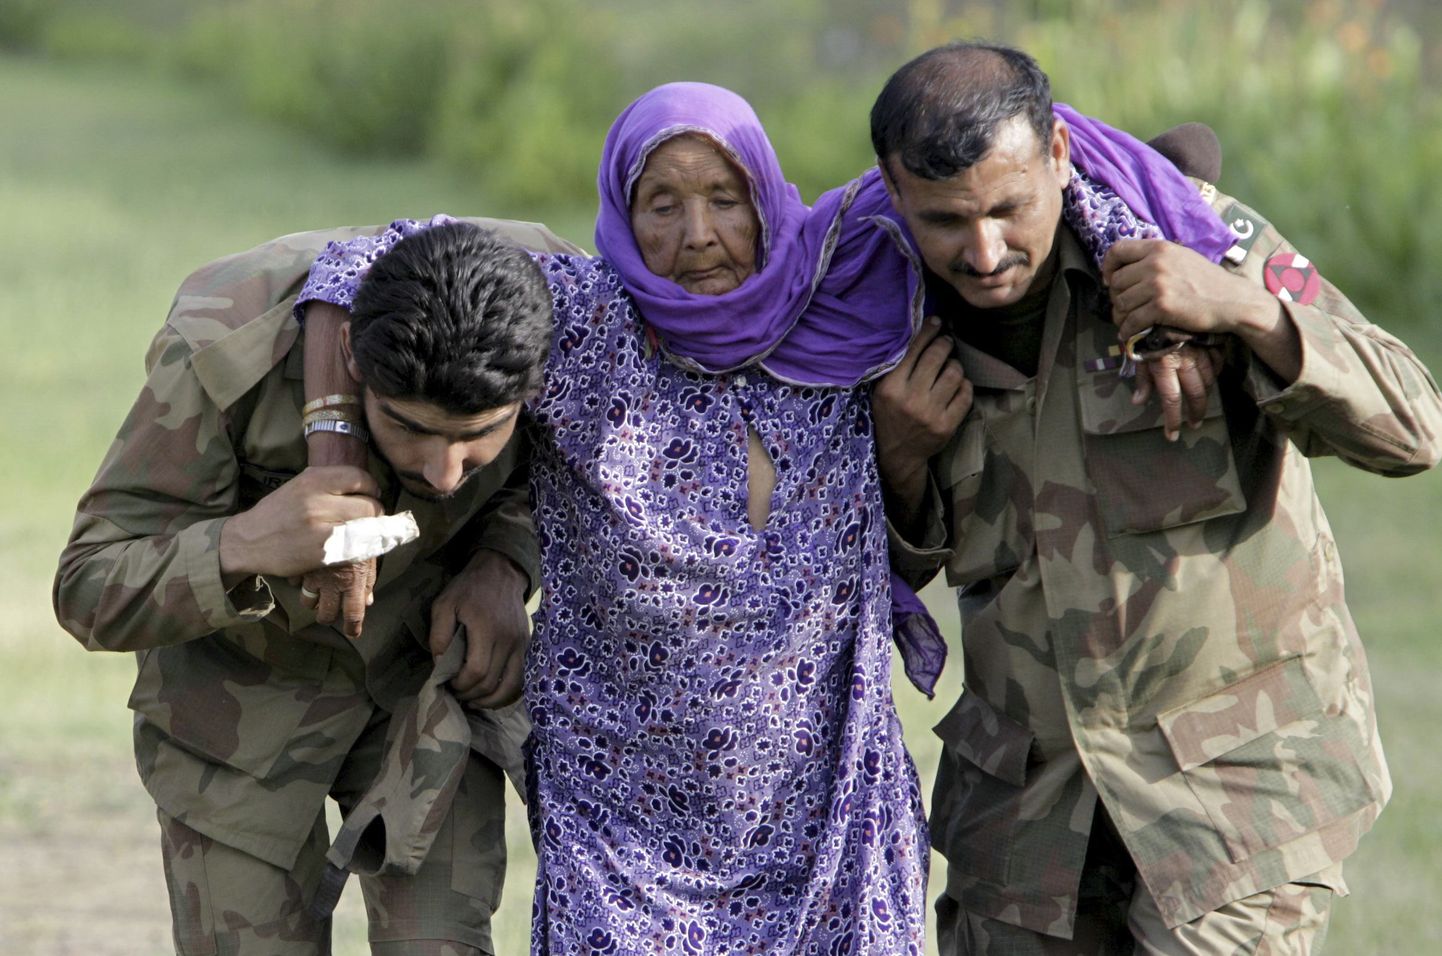 Mohammad Sajjad pilt sellest, kuidas Pakistani sõdurid aitasid evakueerida üleujutustest räsitud külast eakat naist, on tehtud 30. juulil 2010. Oktoobris hakkas see Pakistanis jäädvustatud pilt sotsiaalmeedias ringlema aga kui tõestus Türgi sõdurite abivalmidusest Süüria tsiviilelanike suhtes hiljutise pealetungi käigus kurdidele.